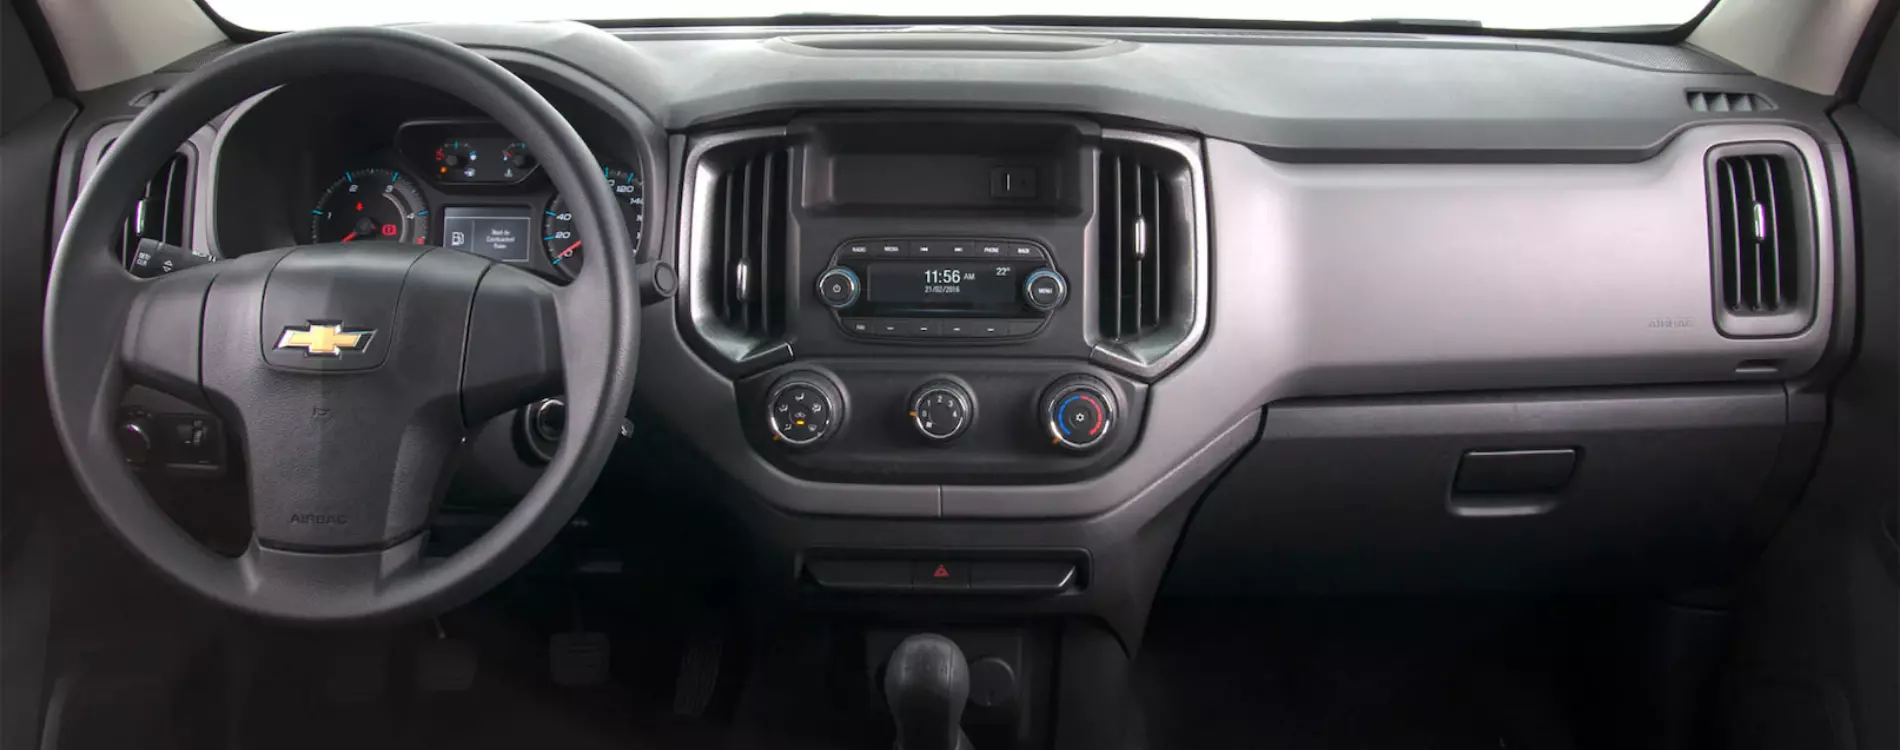 Fotografia feita no interior do veículo, mostrando o painel, Rádio AM/FM stereo, MP3/WPA player, Bluetooth e entrada USB dupla